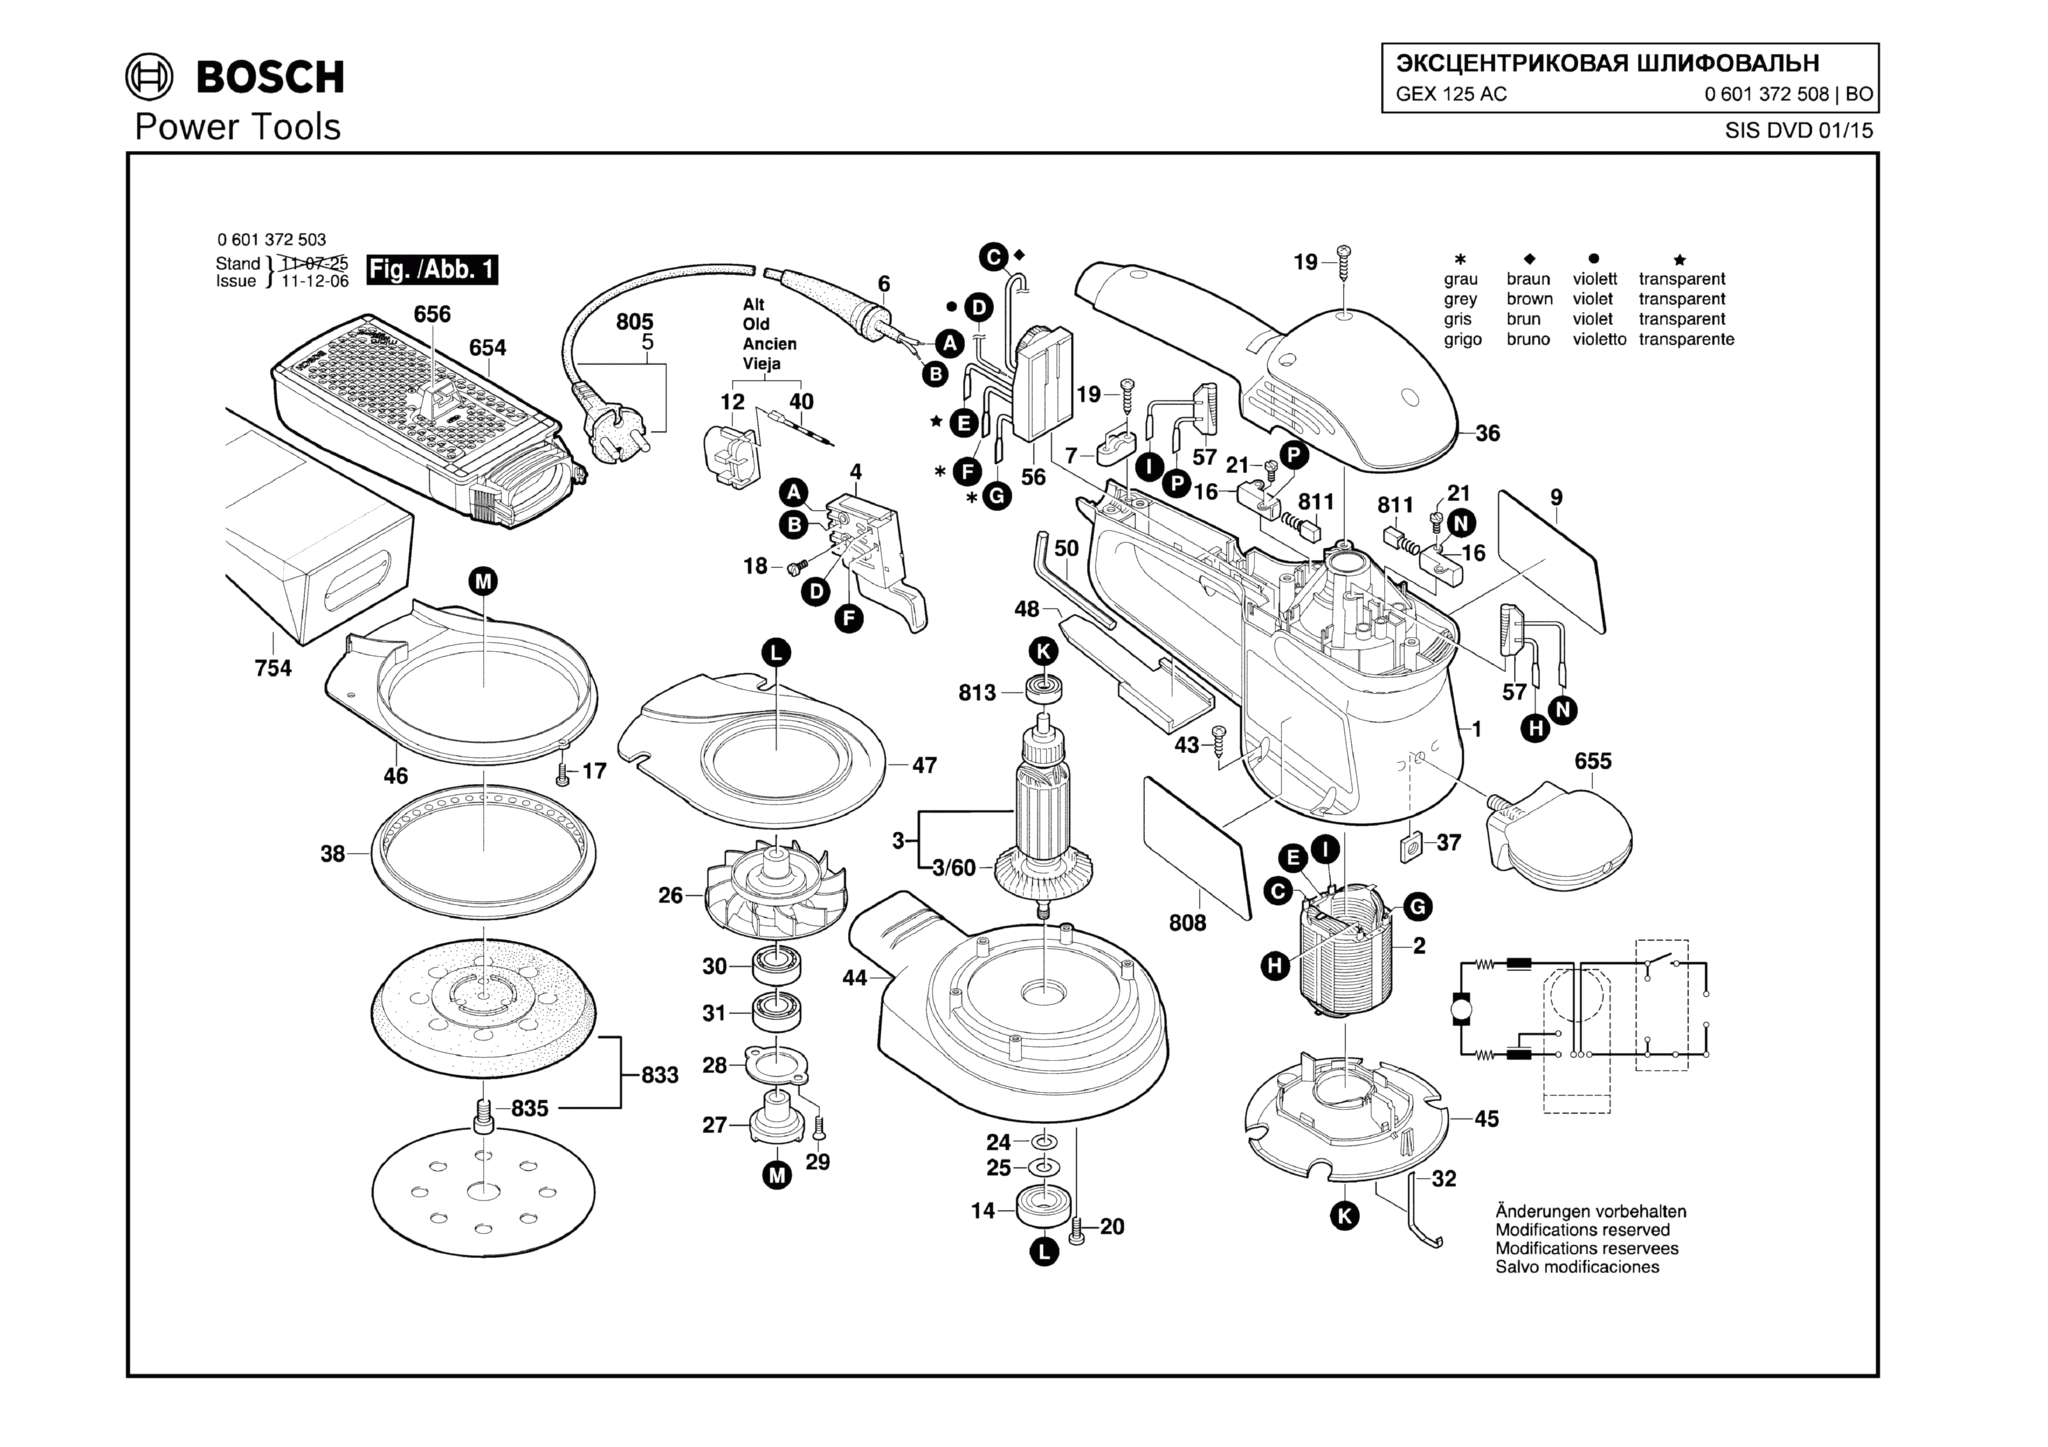 Запчасти, схема и деталировка Bosch GEX 125 AC (ТИП 0601372508) (ЧАСТЬ 2)